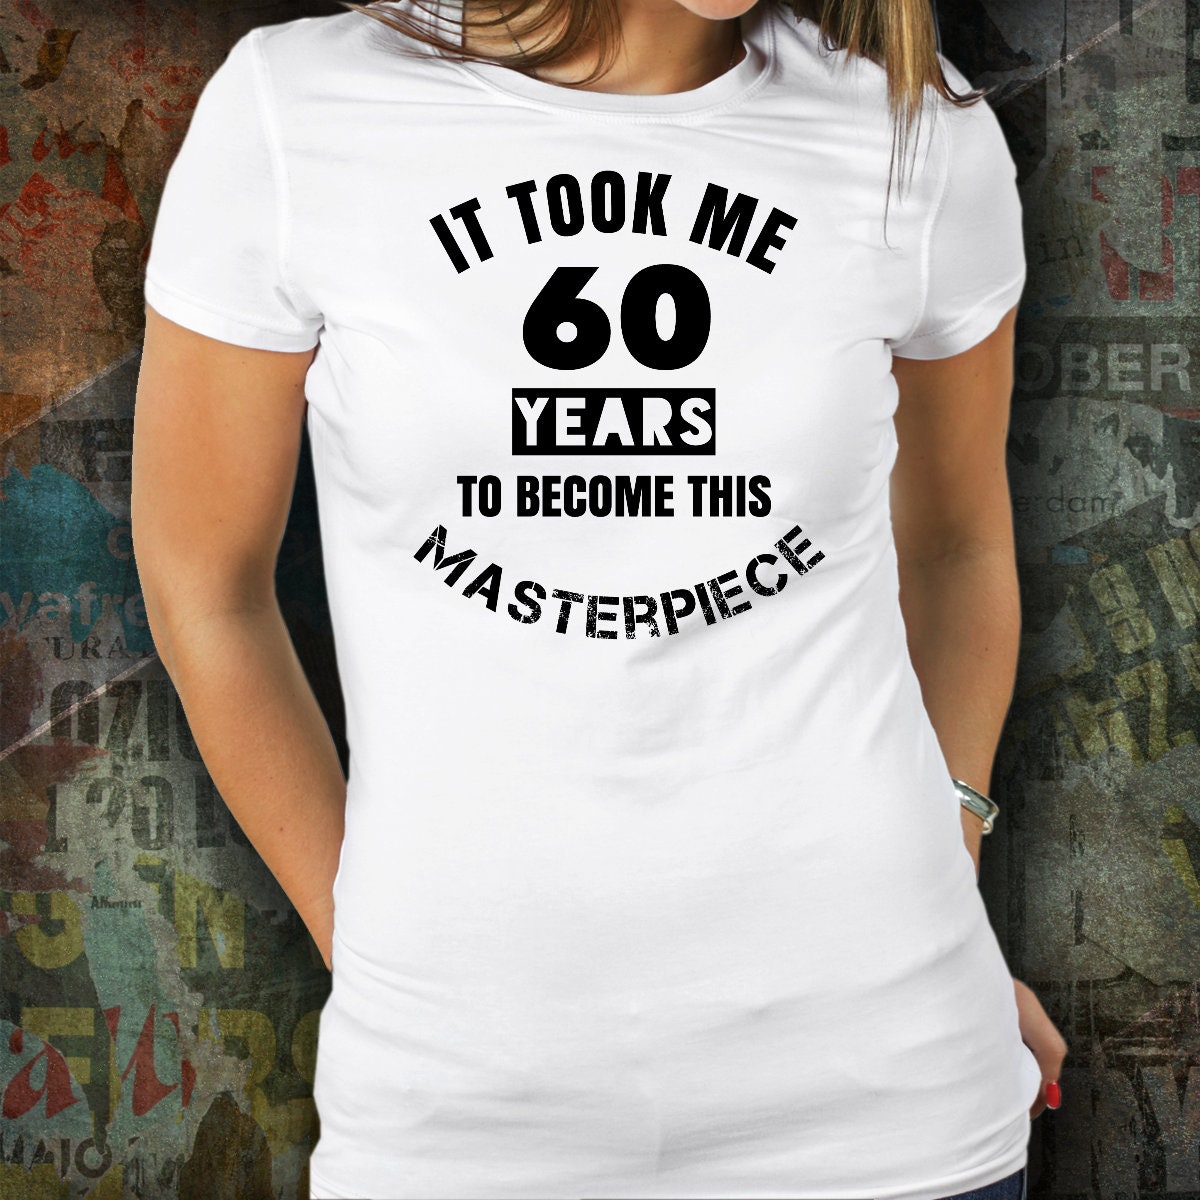 60 ans idée cadeau anniversaire humour' T-shirt Femme